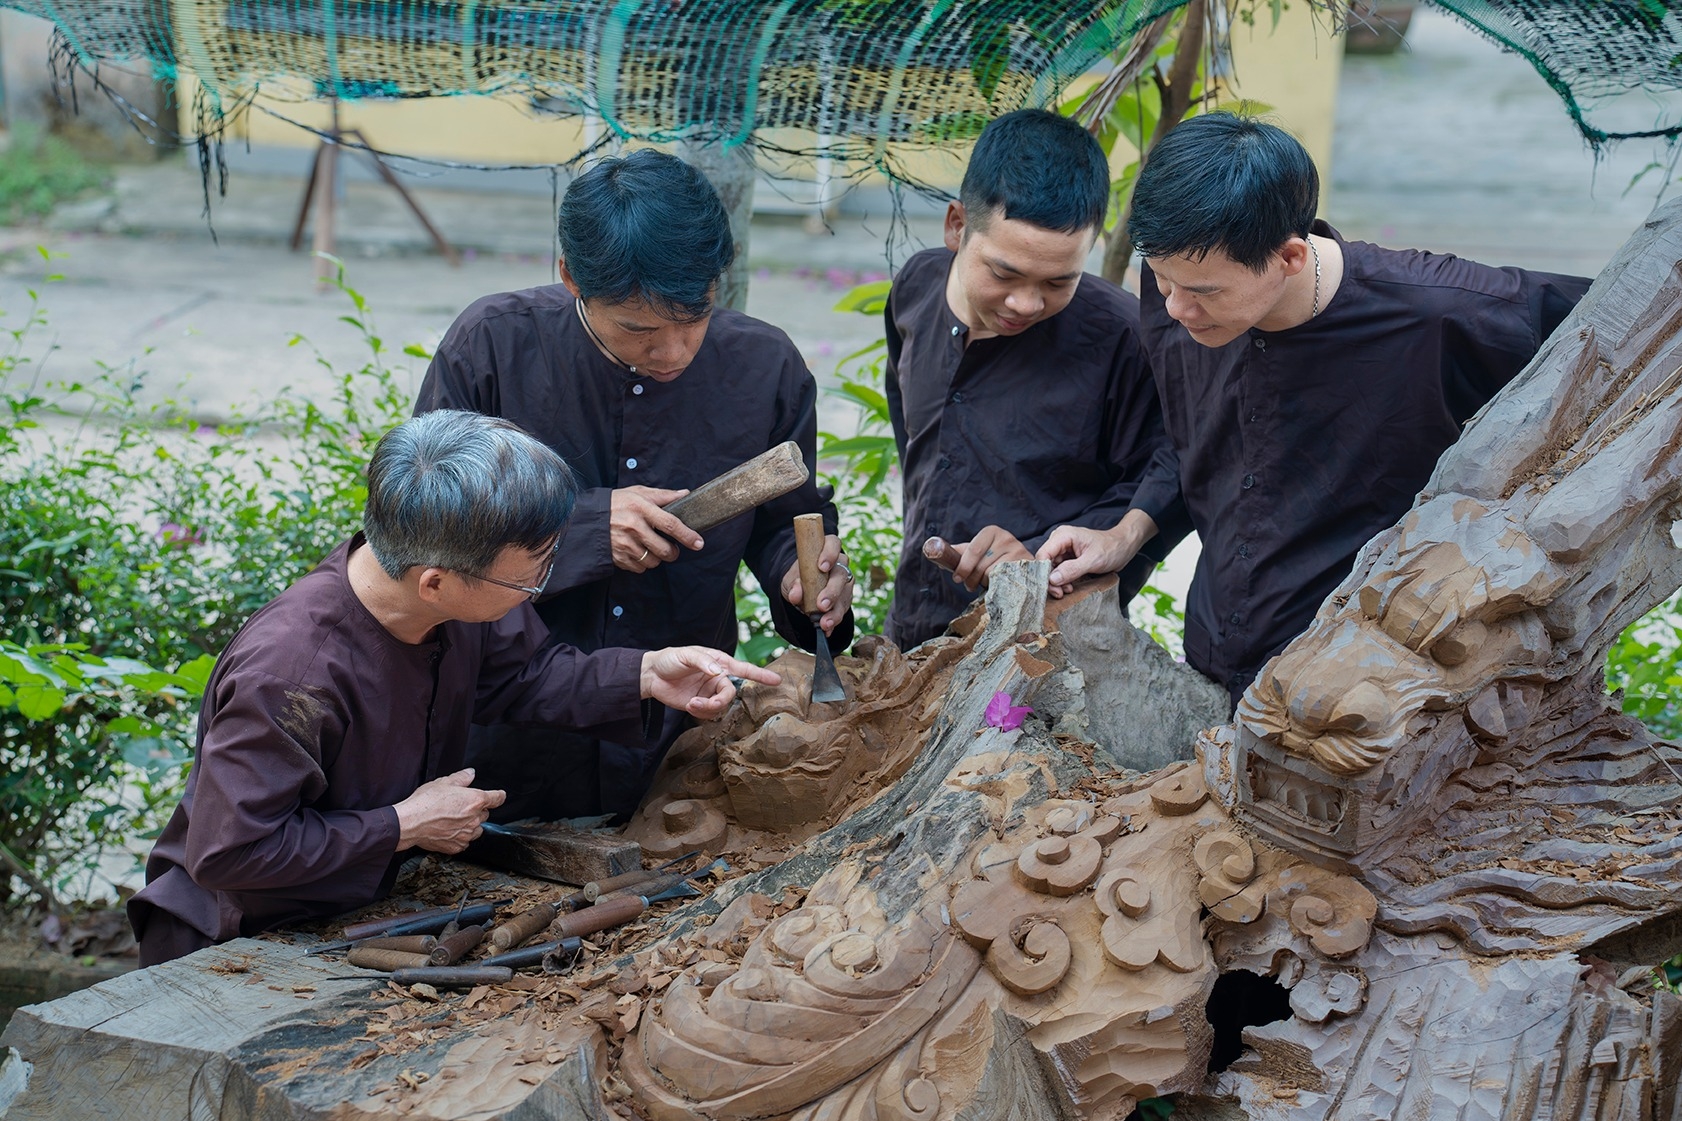 Làng mộc Kim Bồng đến nay đã hơn 500 năm tuổi. Tháng 6/2016, nghề mộc Kim Bồng được Bộ Văn hoá, Thể thao và Du lịch công nhận là Di sản Văn hóa phi vật thể cấp quốc gia.